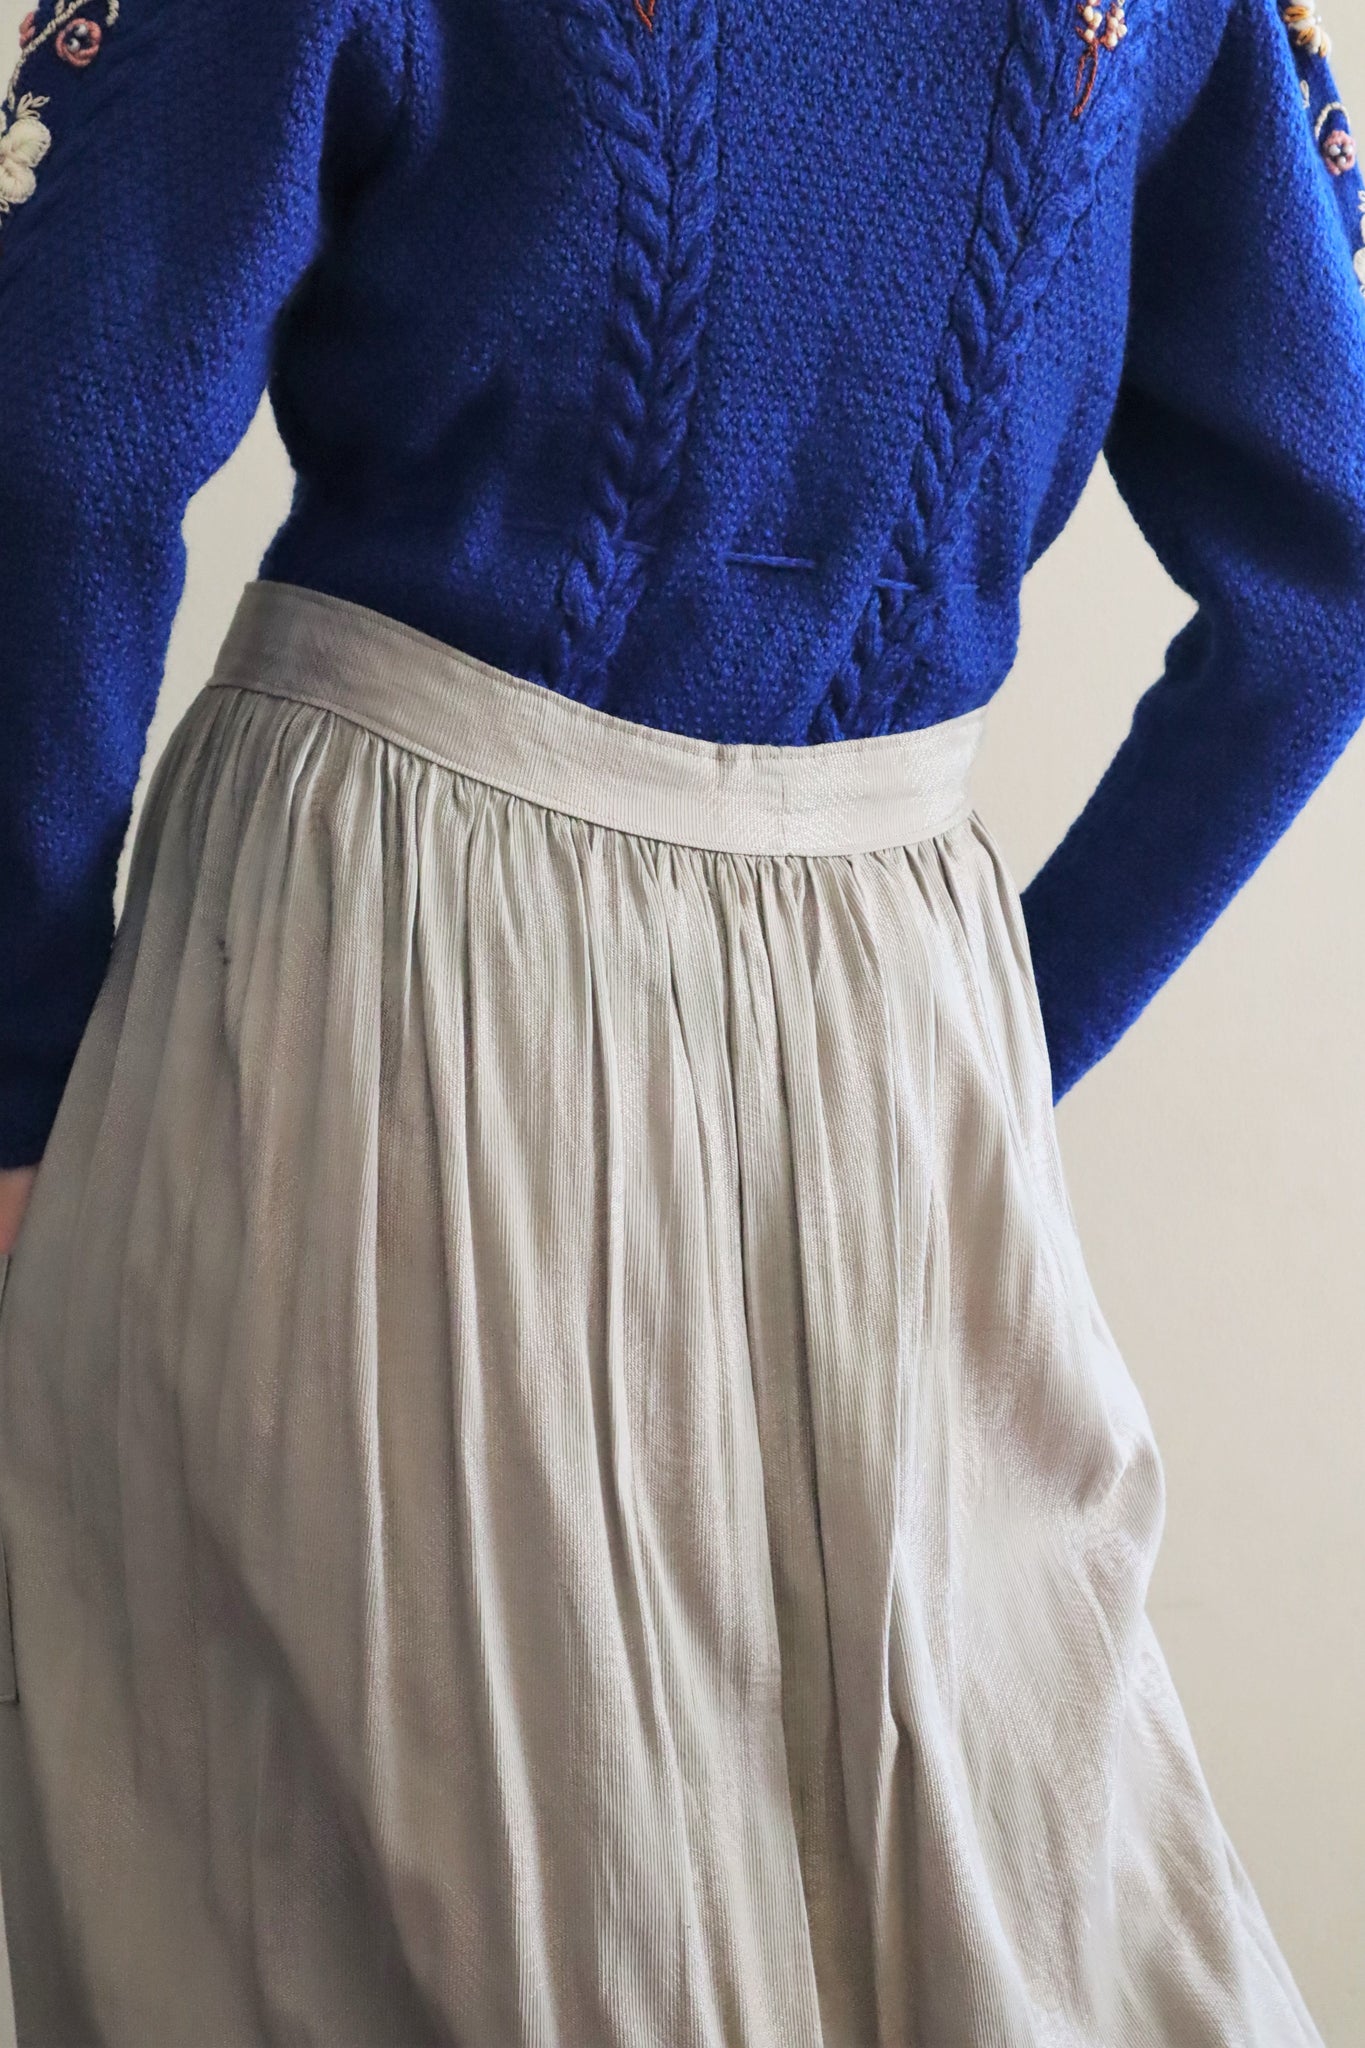 1800s Antique Front Pocket Skirt